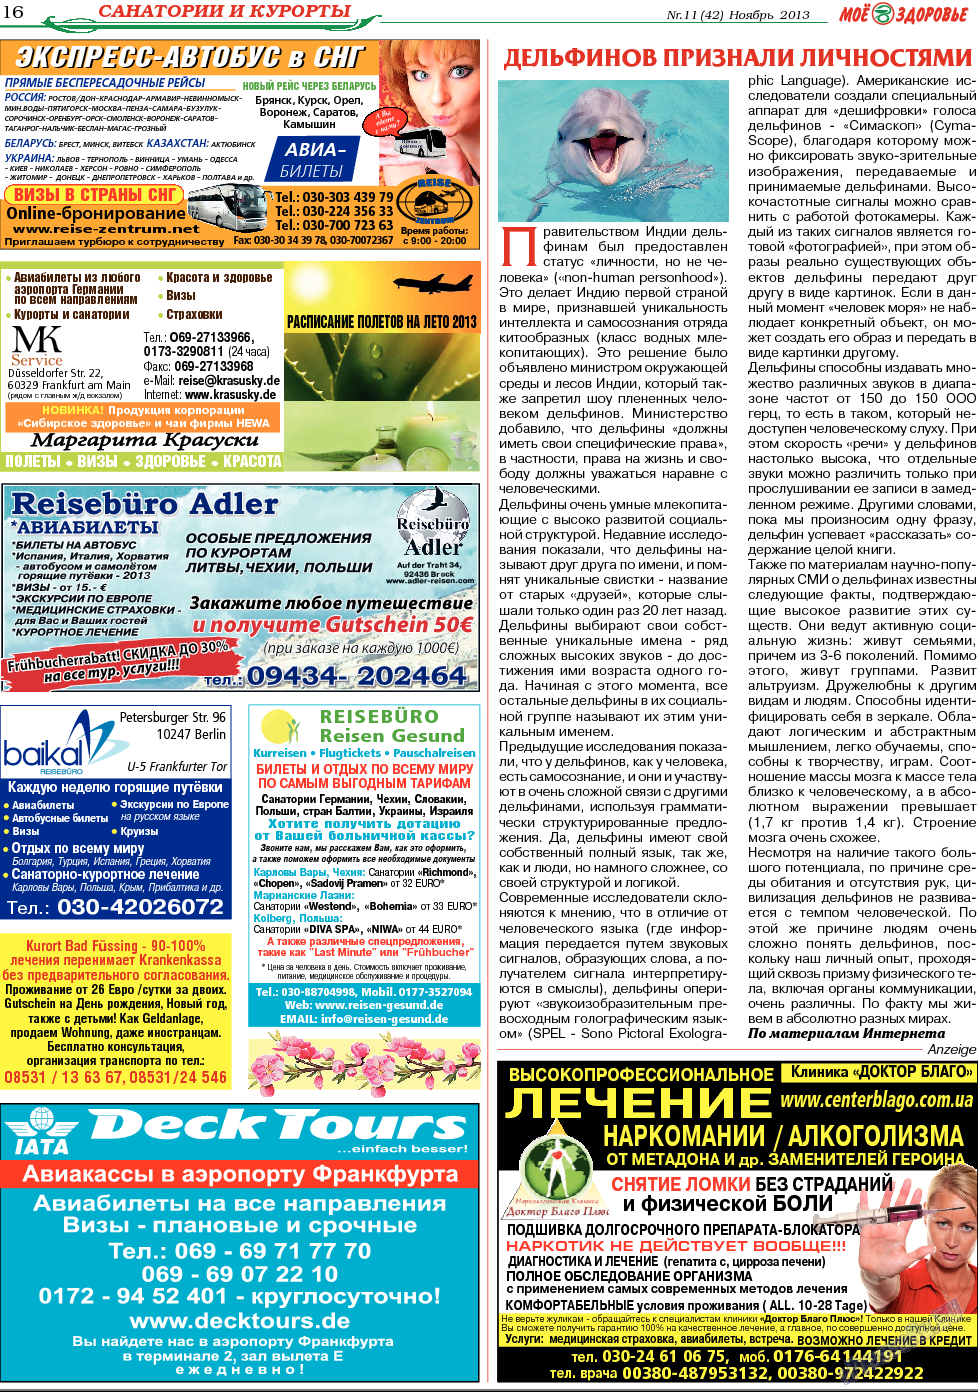 Кругозор (газета). 2013 год, номер 11, стр. 16